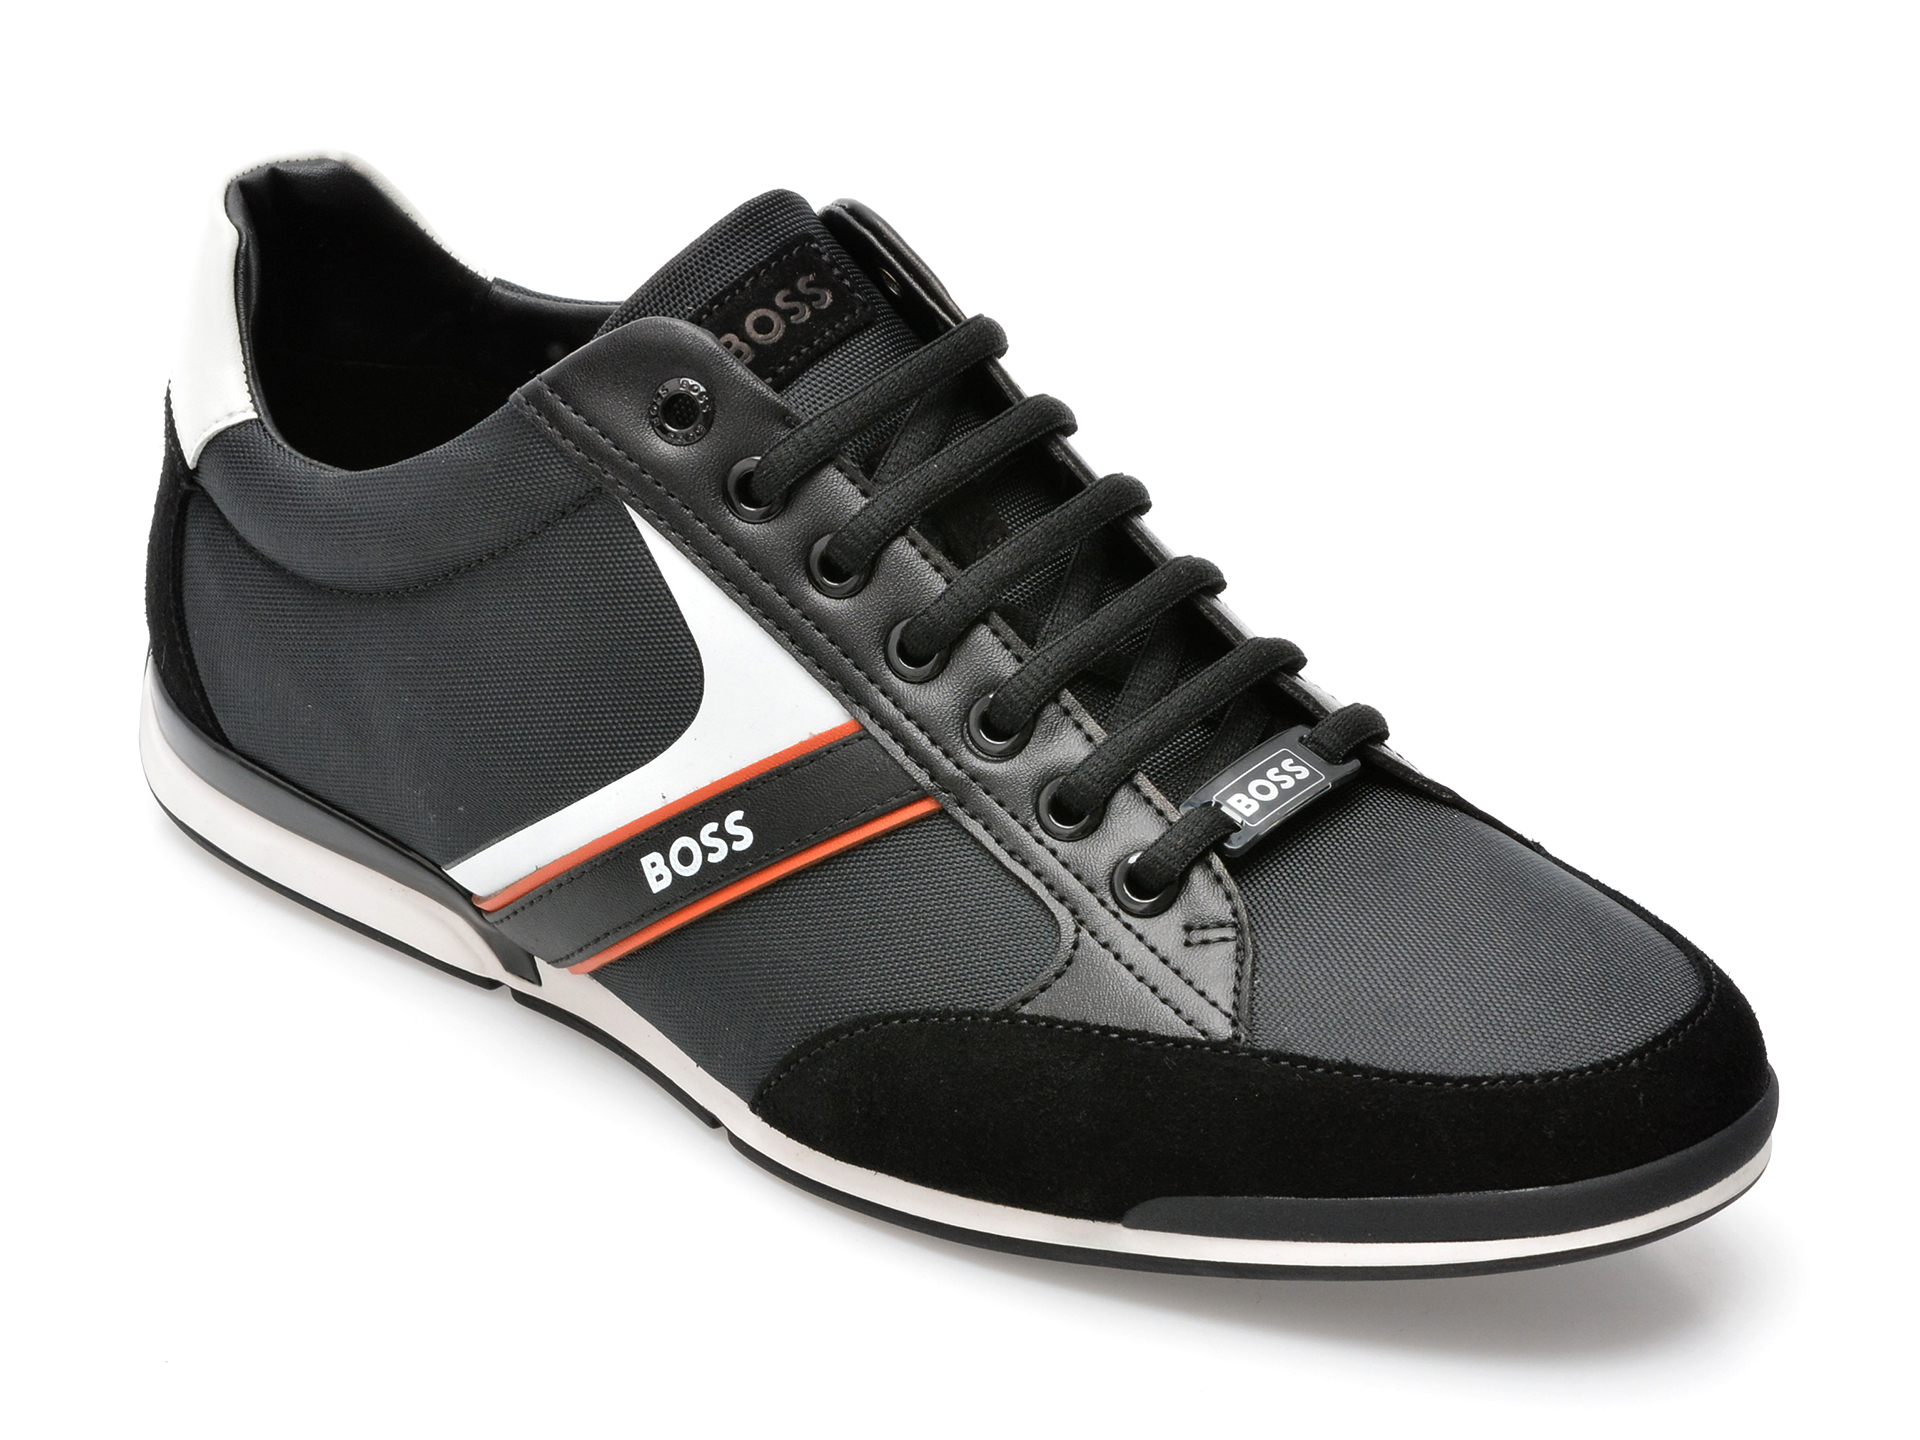 Pantofi sport HUGO BOSS negri, 1235, din material textil si piele naturala /barbati/pantofi /barbati/pantofi